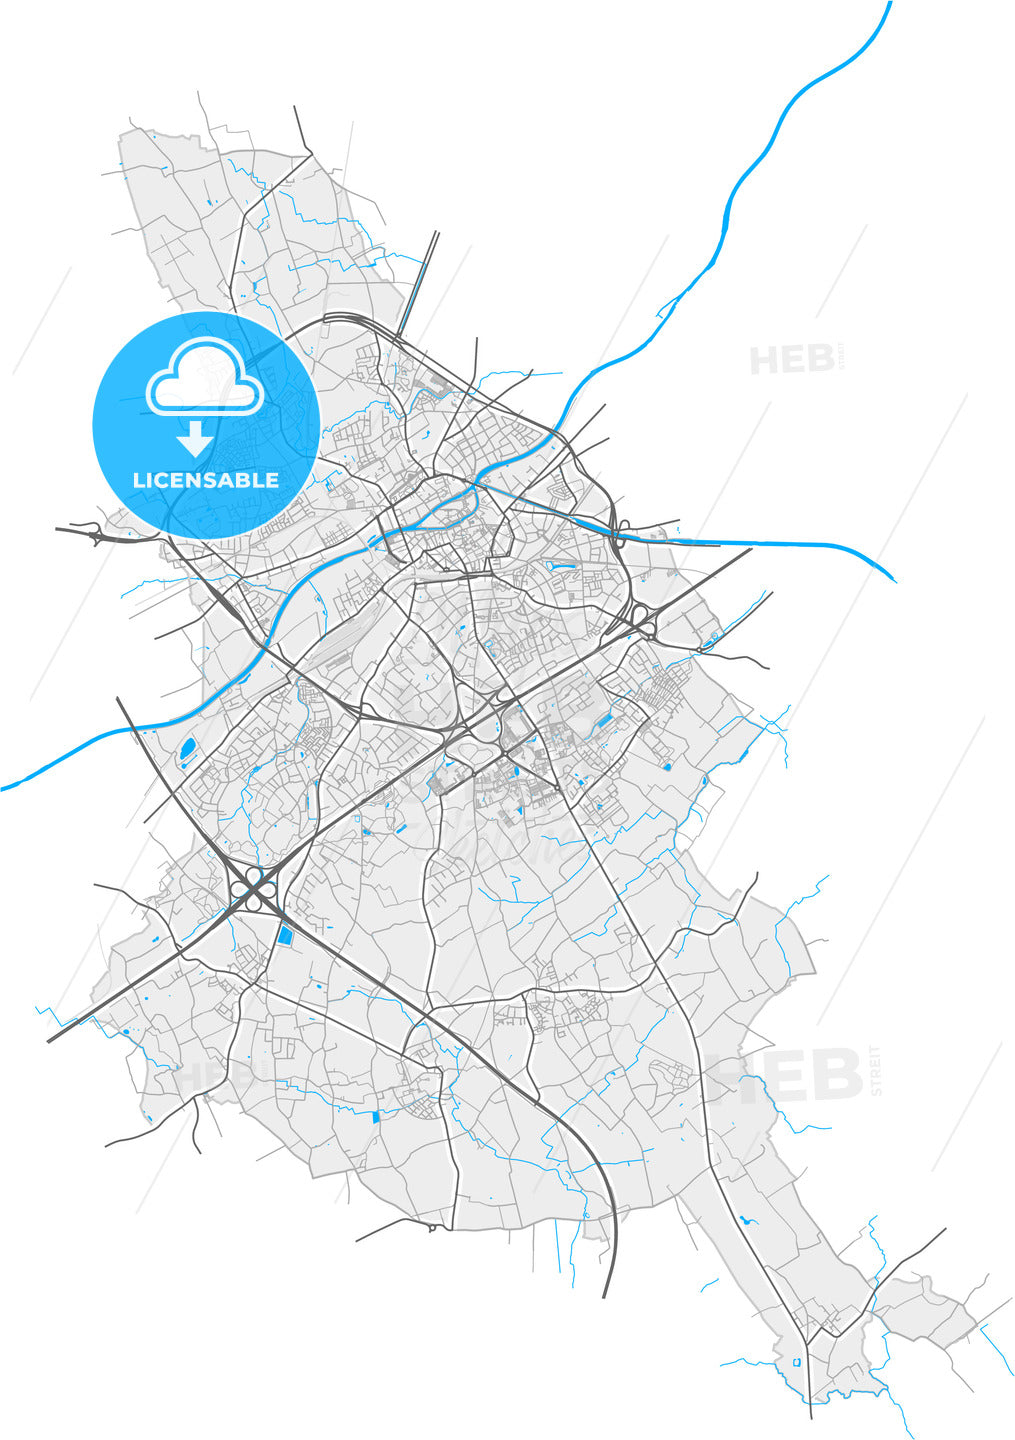 Kortrijk, West Flanders, Belgium, high quality vector map